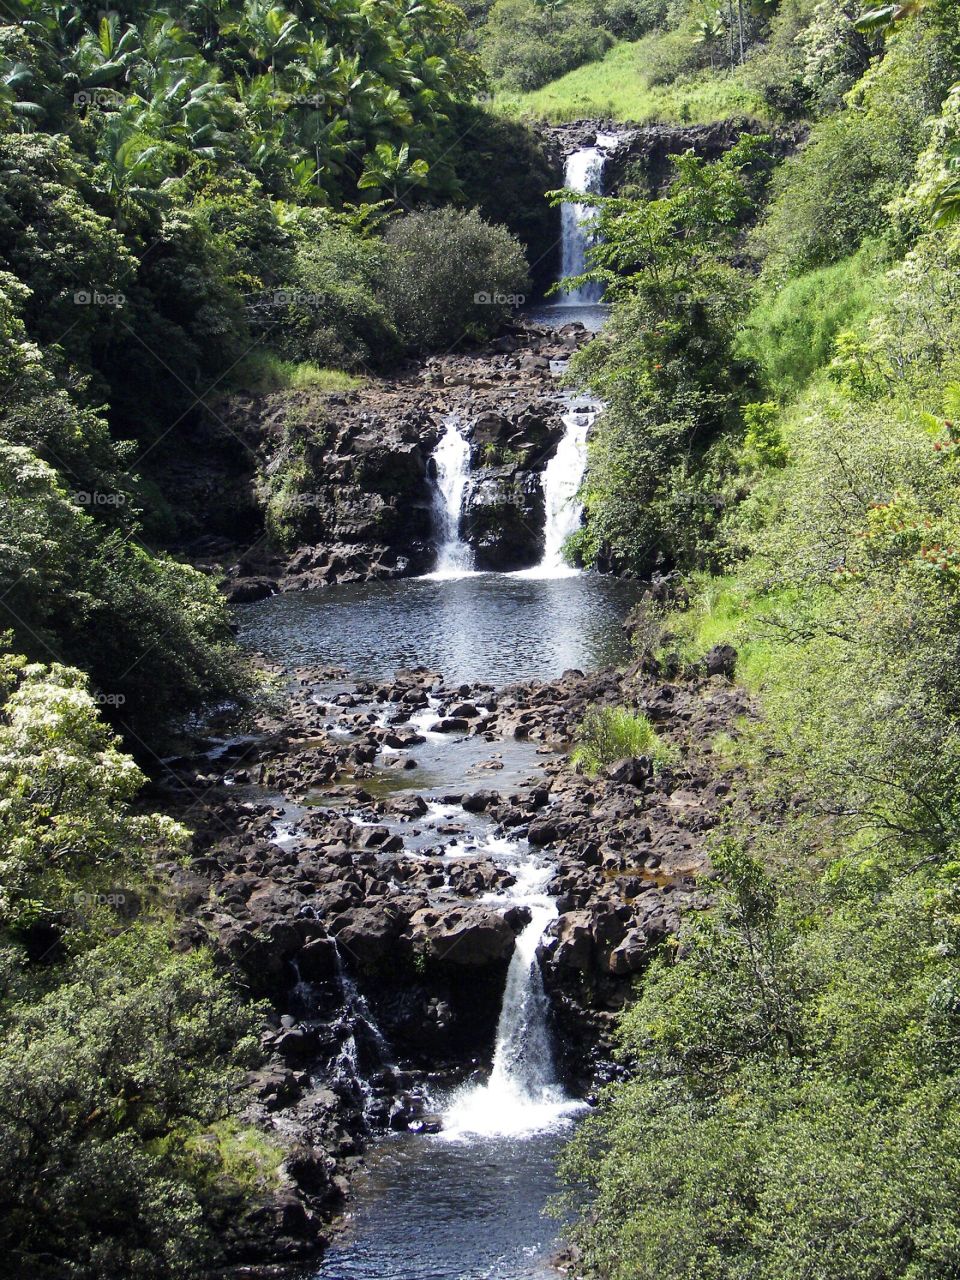 Waterfall on Big Island of Hawaii 
